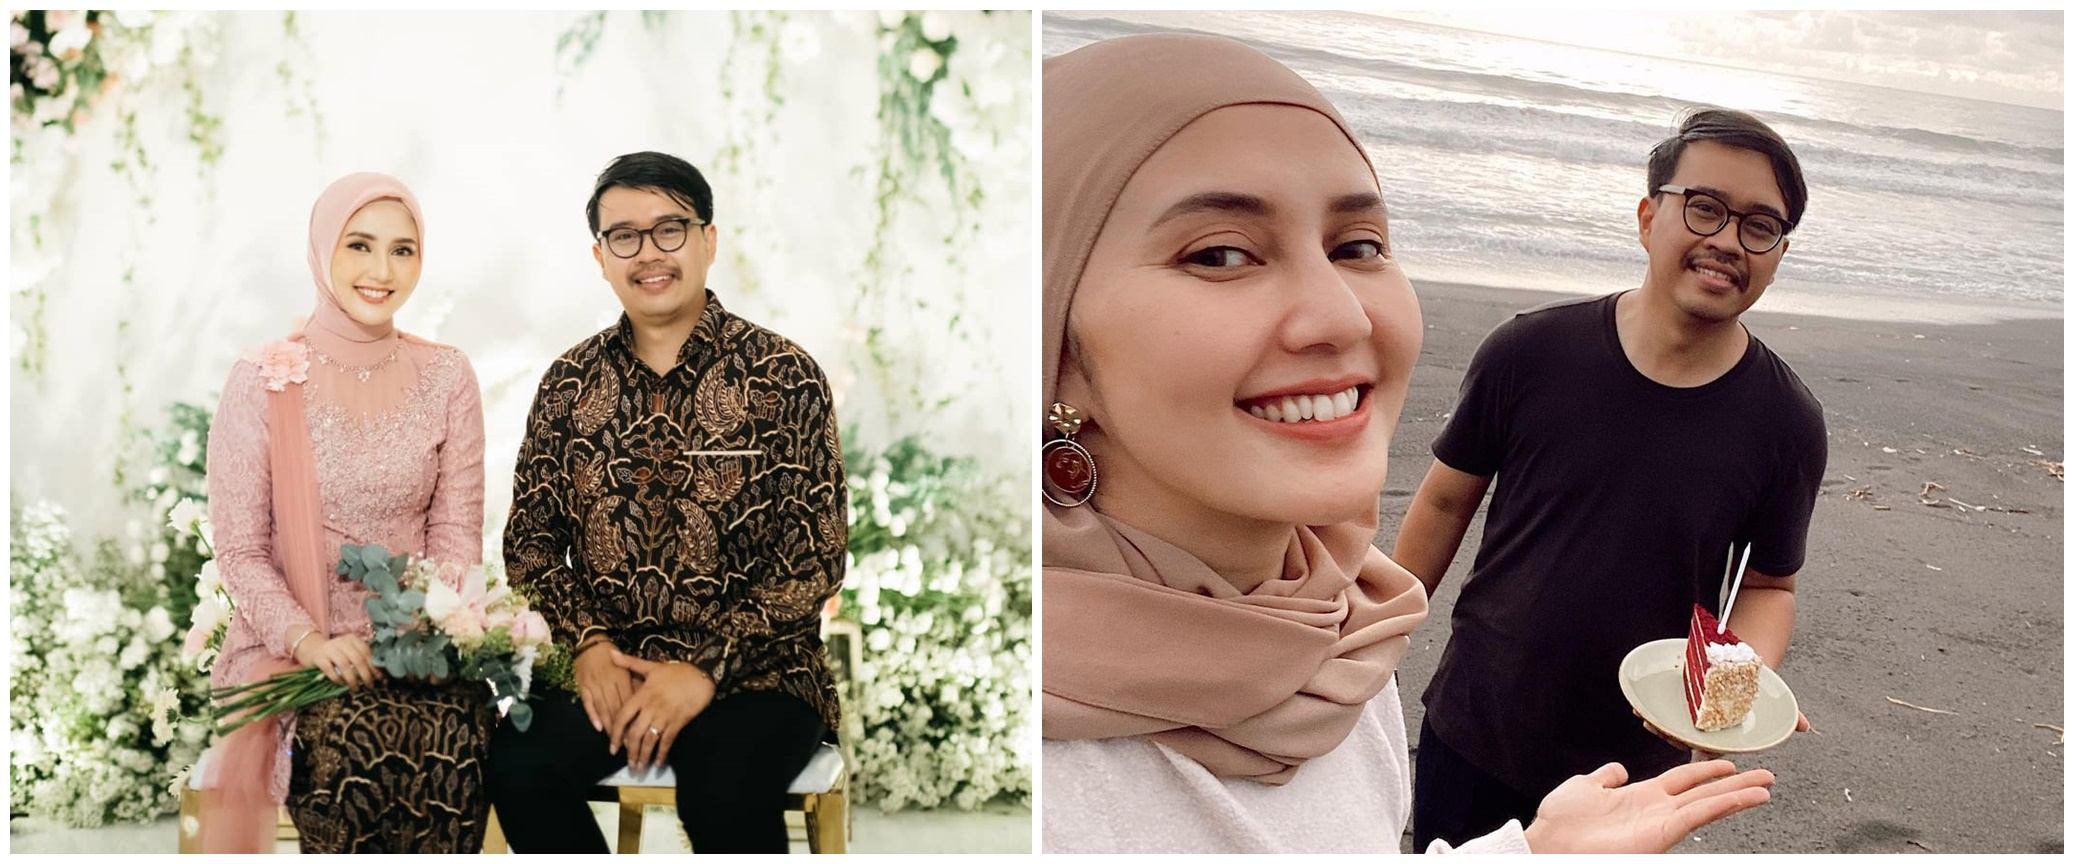 Anggota DPRD, ini 7 potret calon suami Rara Nawangsih 'Ikatan Cinta'